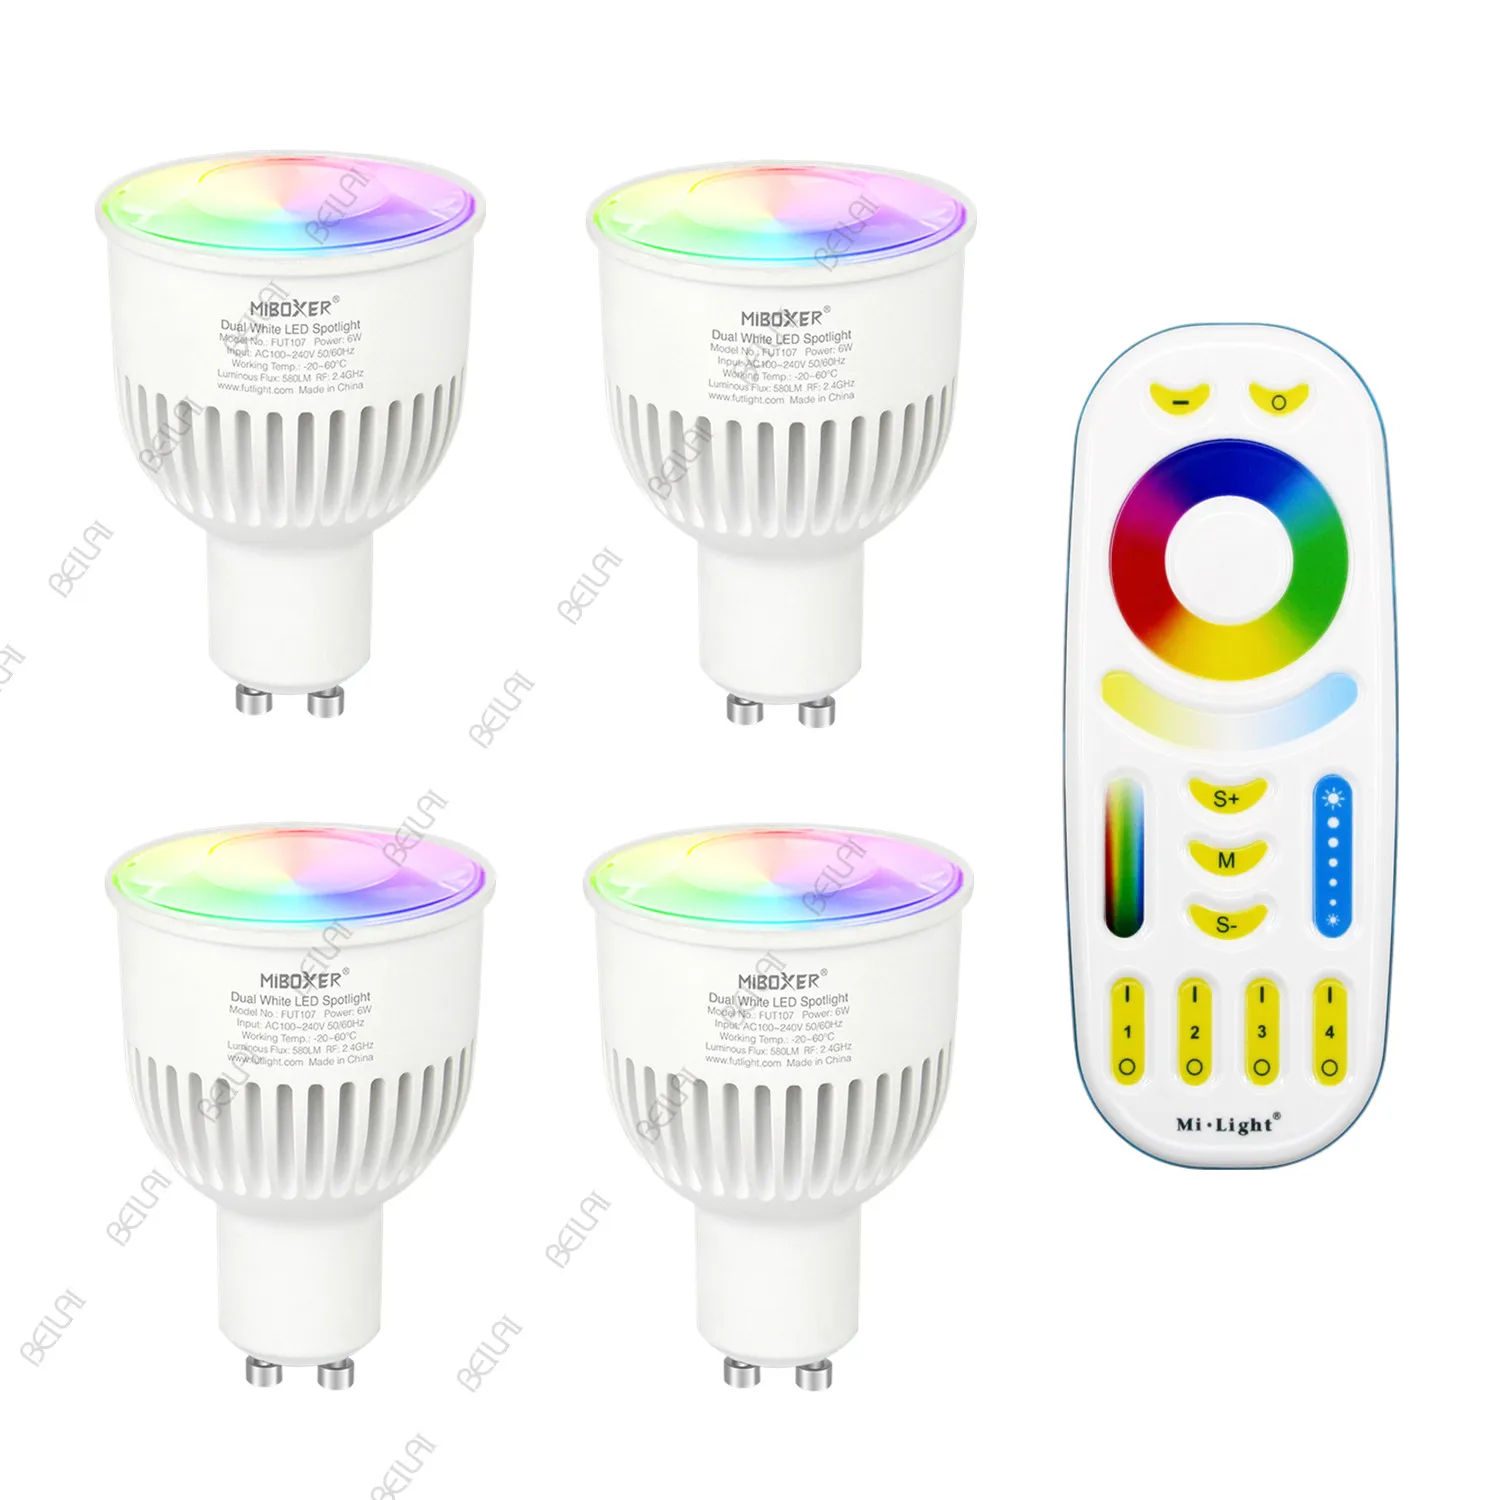 

Milight LED Light Bulb FUT106 6W GU10 RGB+CCT LED Lamp MiBoxer 6W GU10 Mi light Smart LED Spotlight AC100~240V